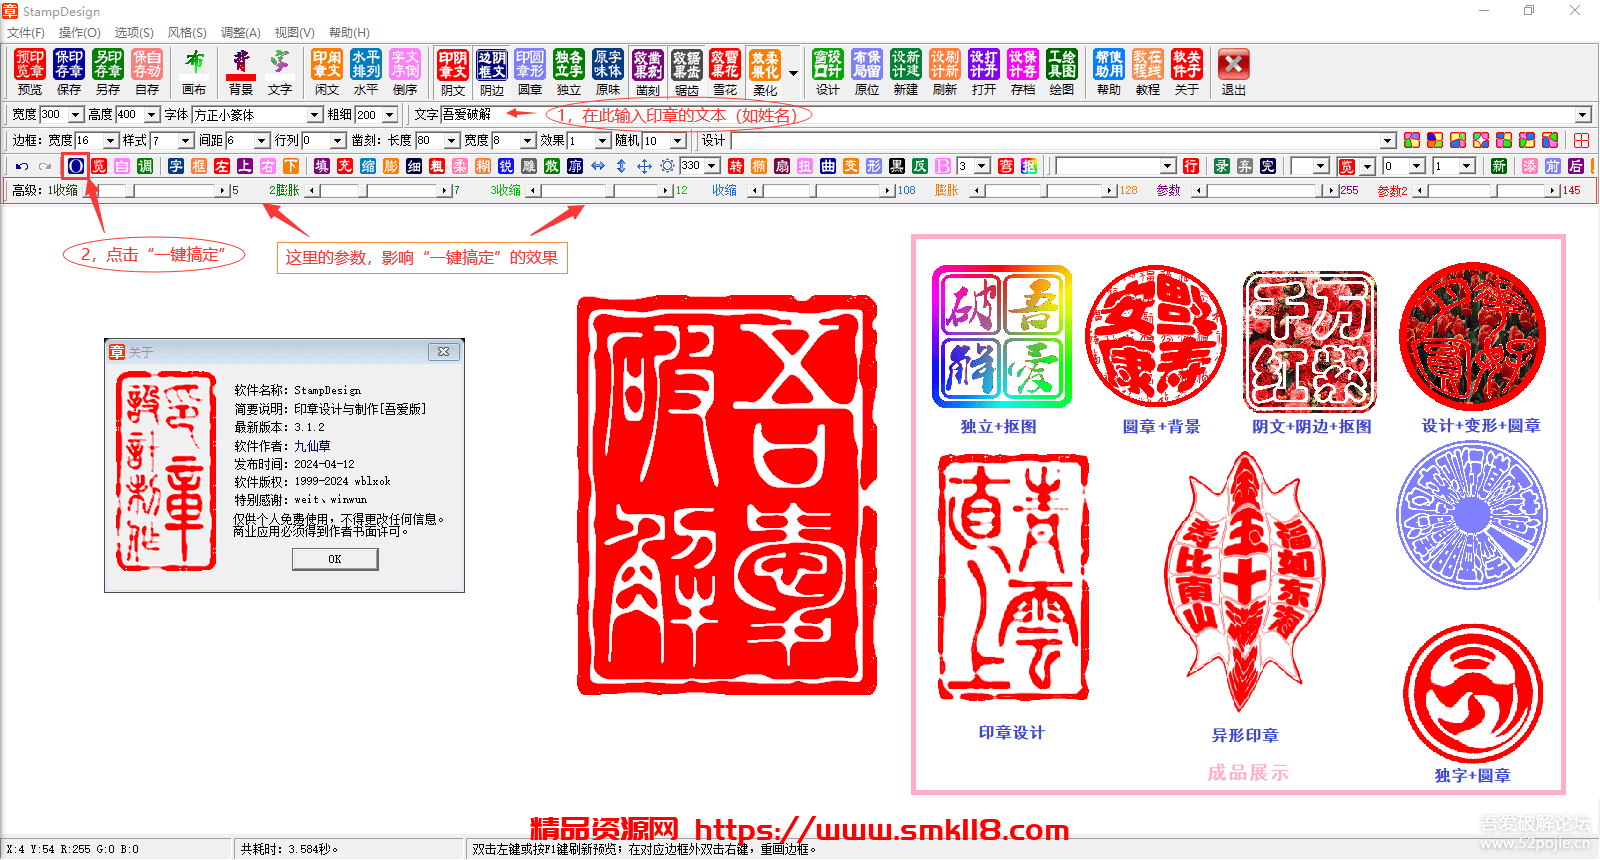 [图像制作] StampDesign-印章设计制作软件